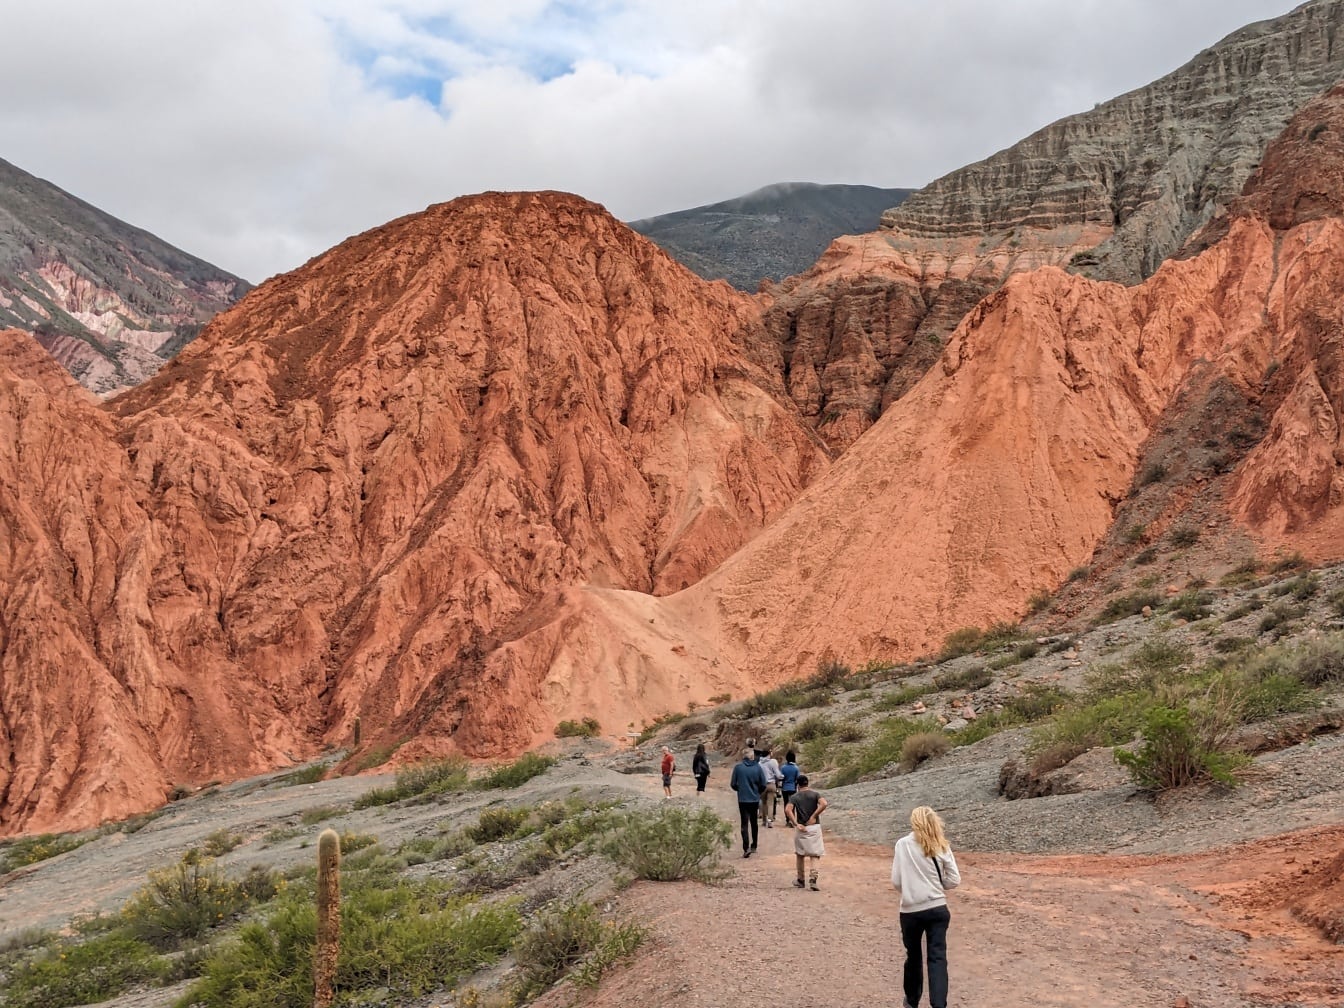 Những người đi bộ đường dài đi bộ trên núi ở miền bắc Argentina được gọi là núi cầu vồng